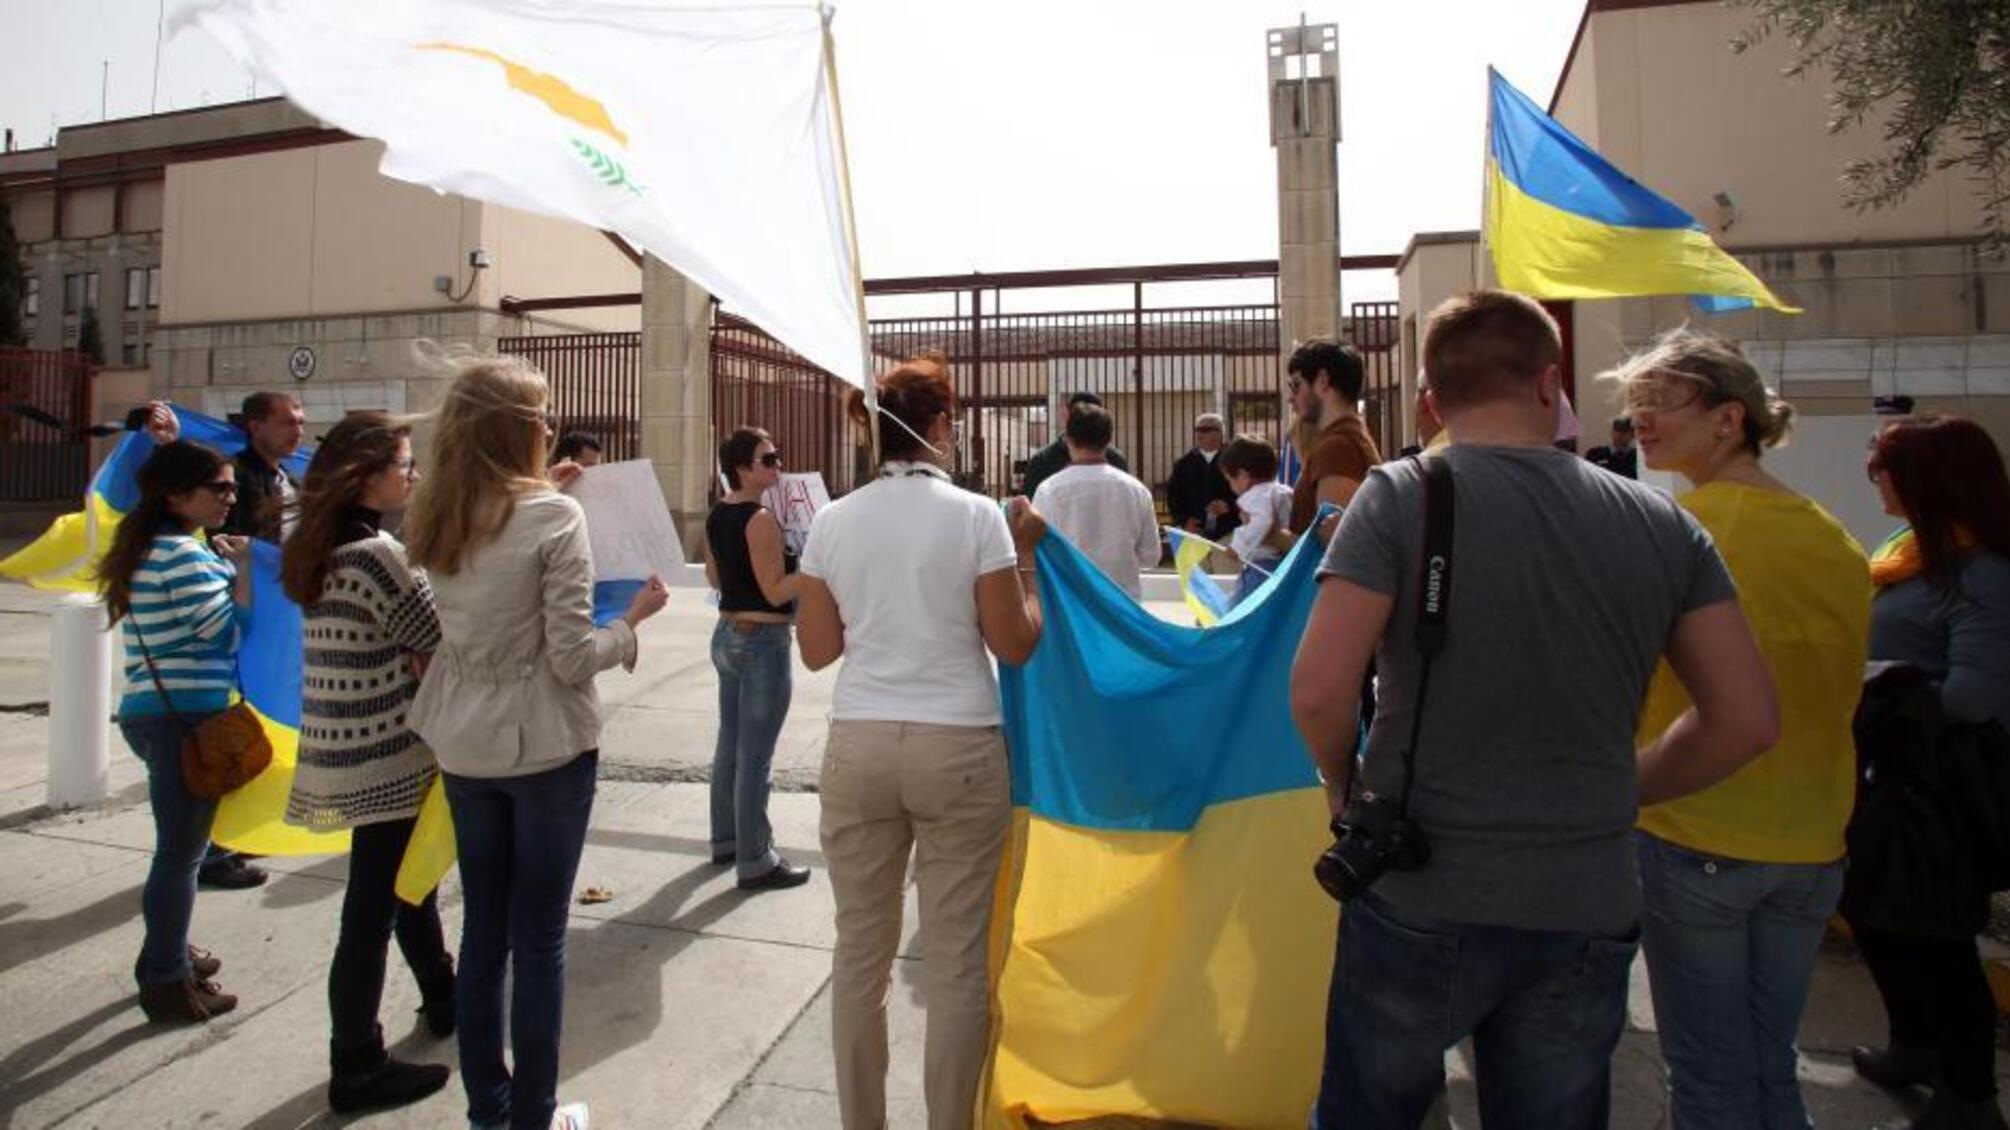 Кипр планирует выселить из гостиниц более трех тысяч украинских беженцев: подробности скандала